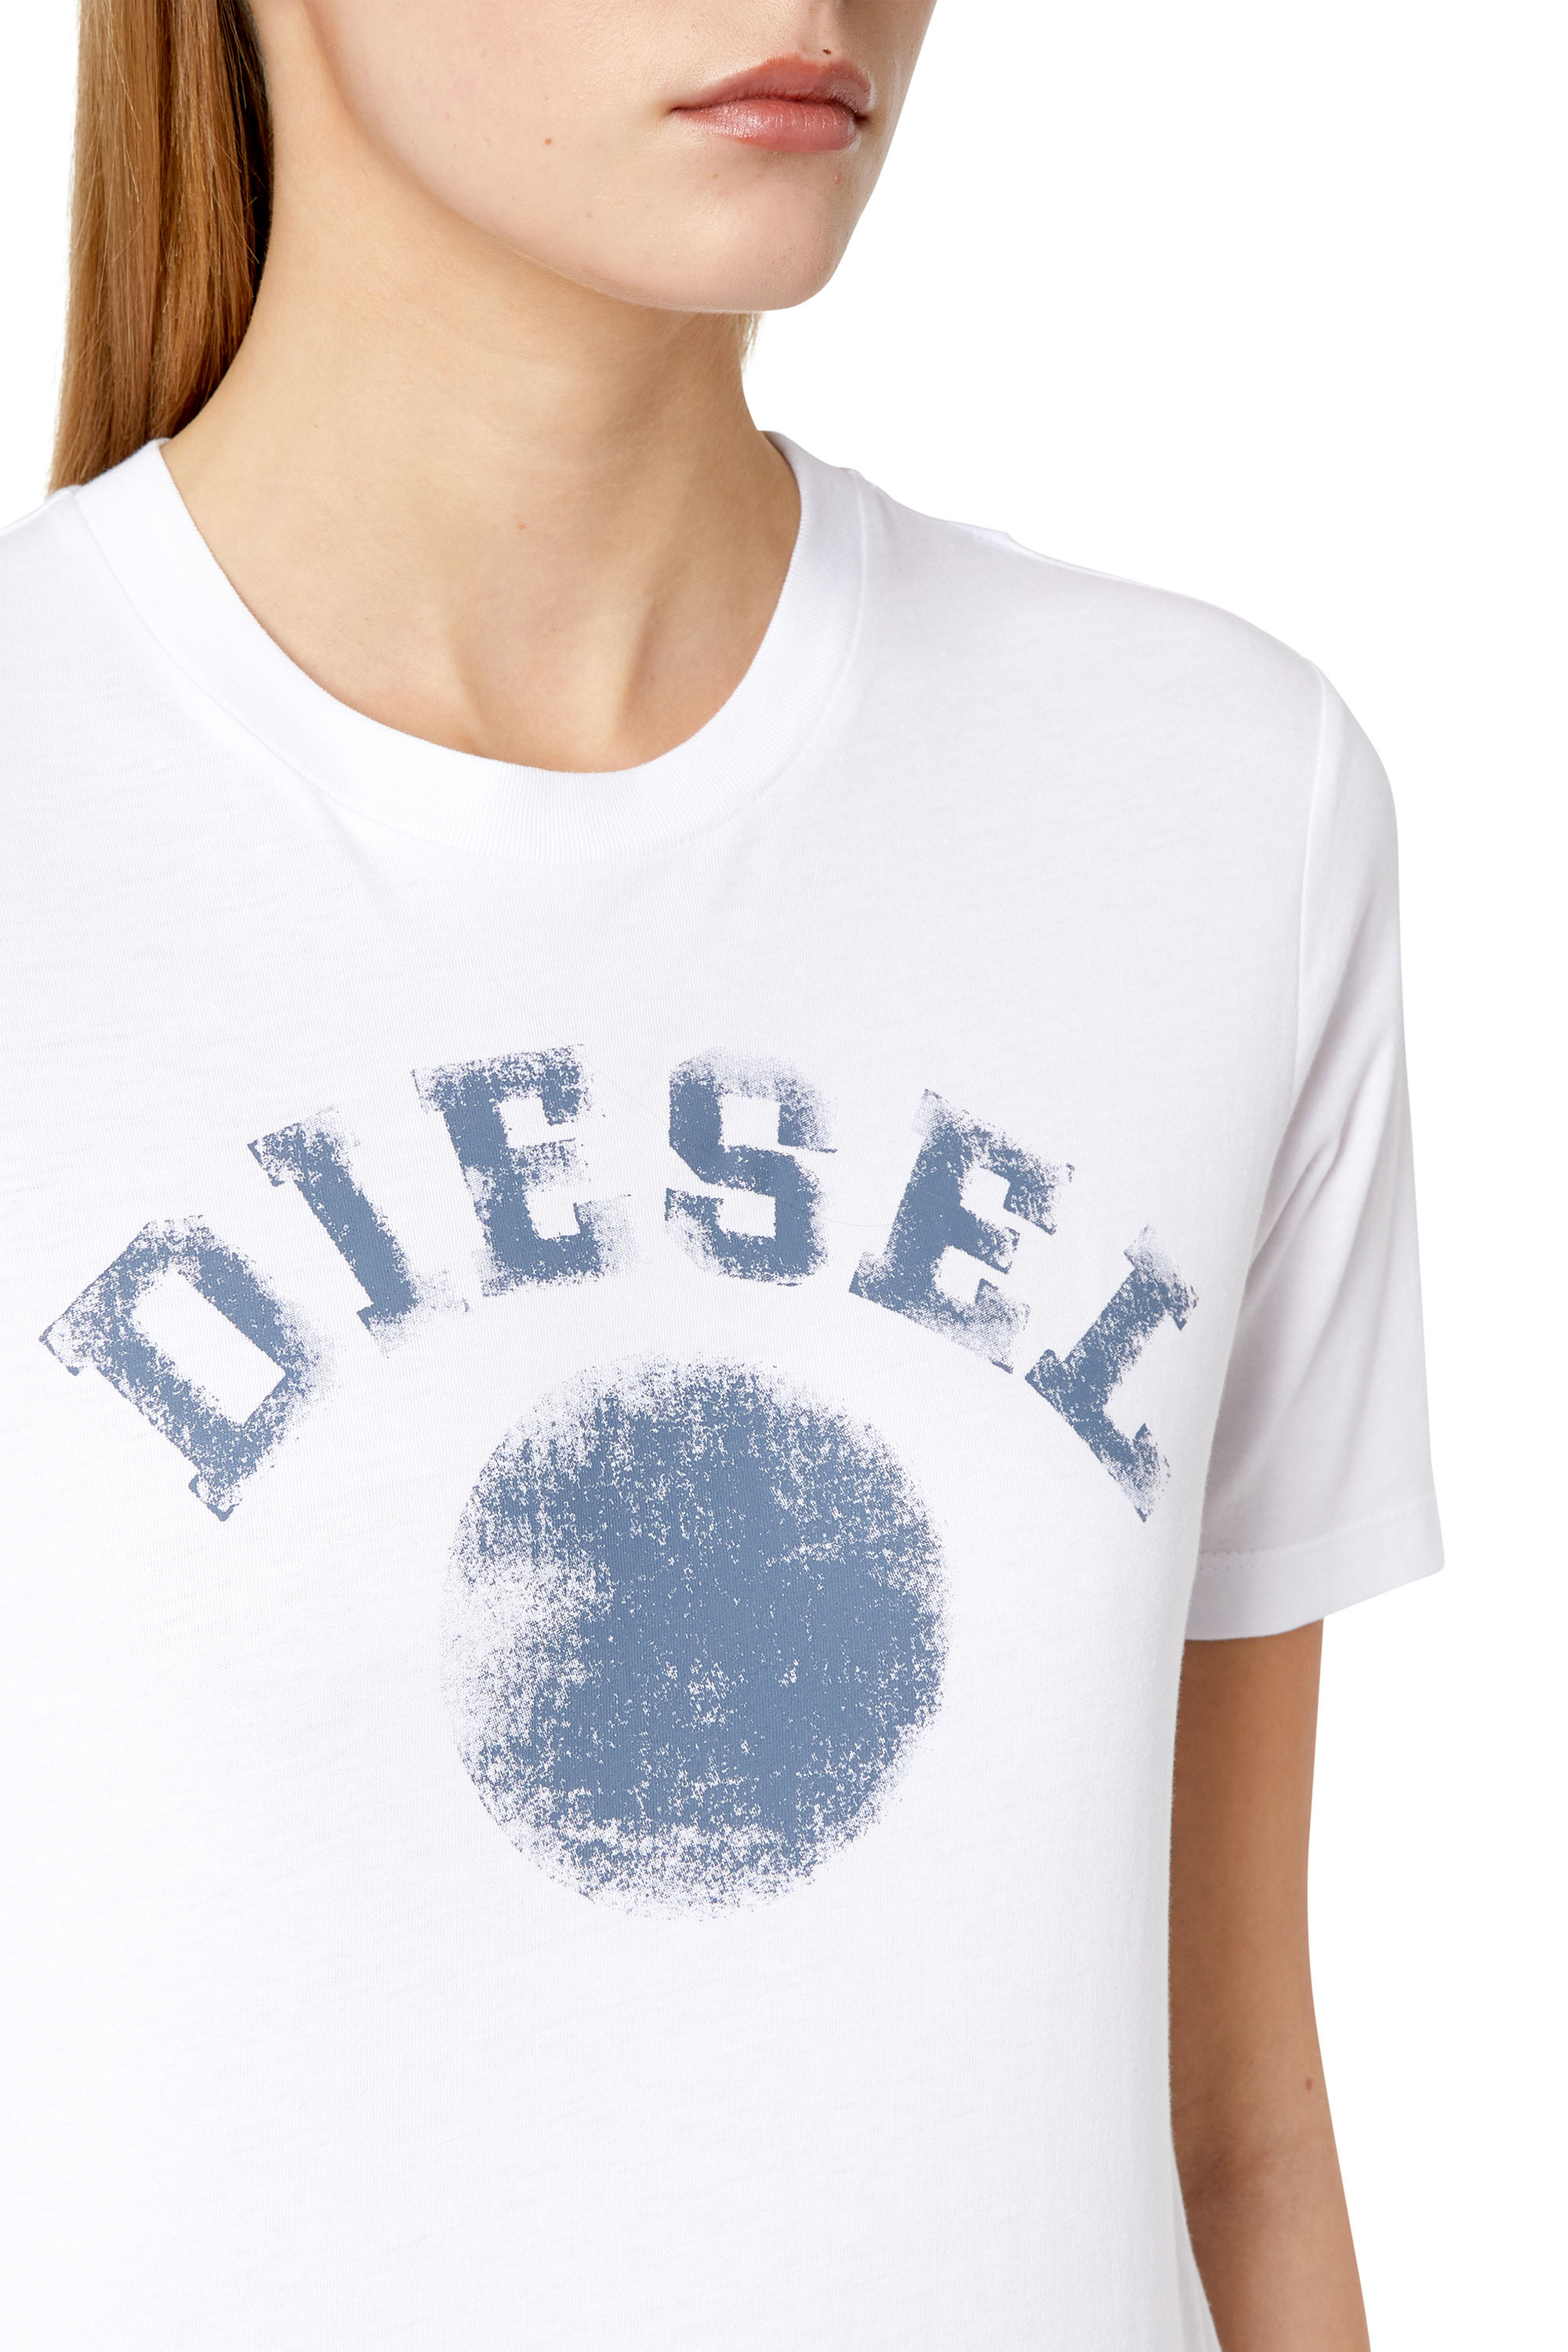 【新品・未使用】DIESEL ディーゼル ロゴ プリント Tシャツ モノグラム